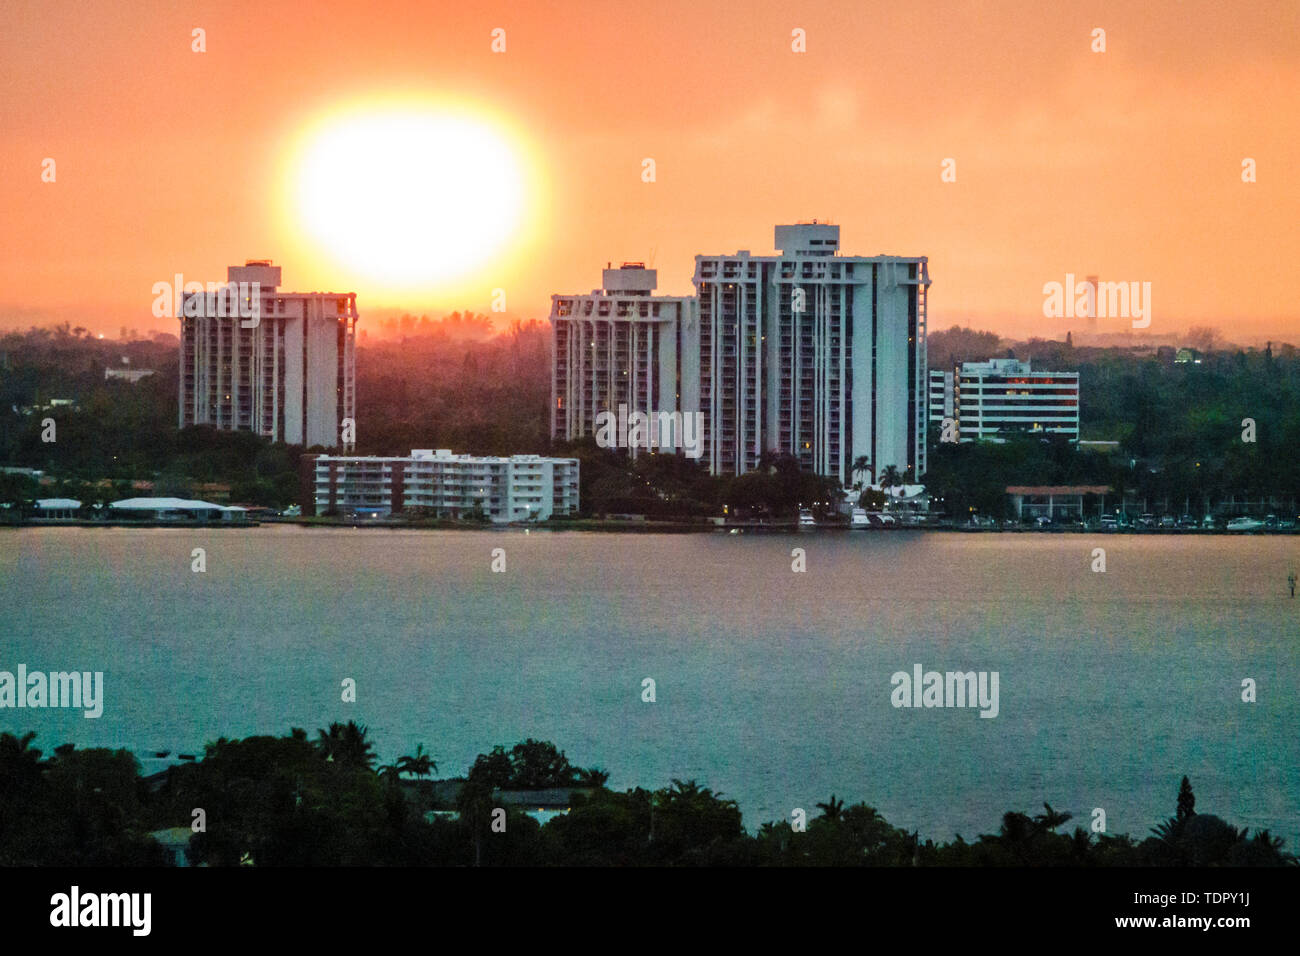 Miami Floride, Biscayne Bay coucher de soleil, horizon de la ville, front de mer, bâtiments résidentiels, ciel voilé, coucher de soleil, FL190505013 Banque D'Images